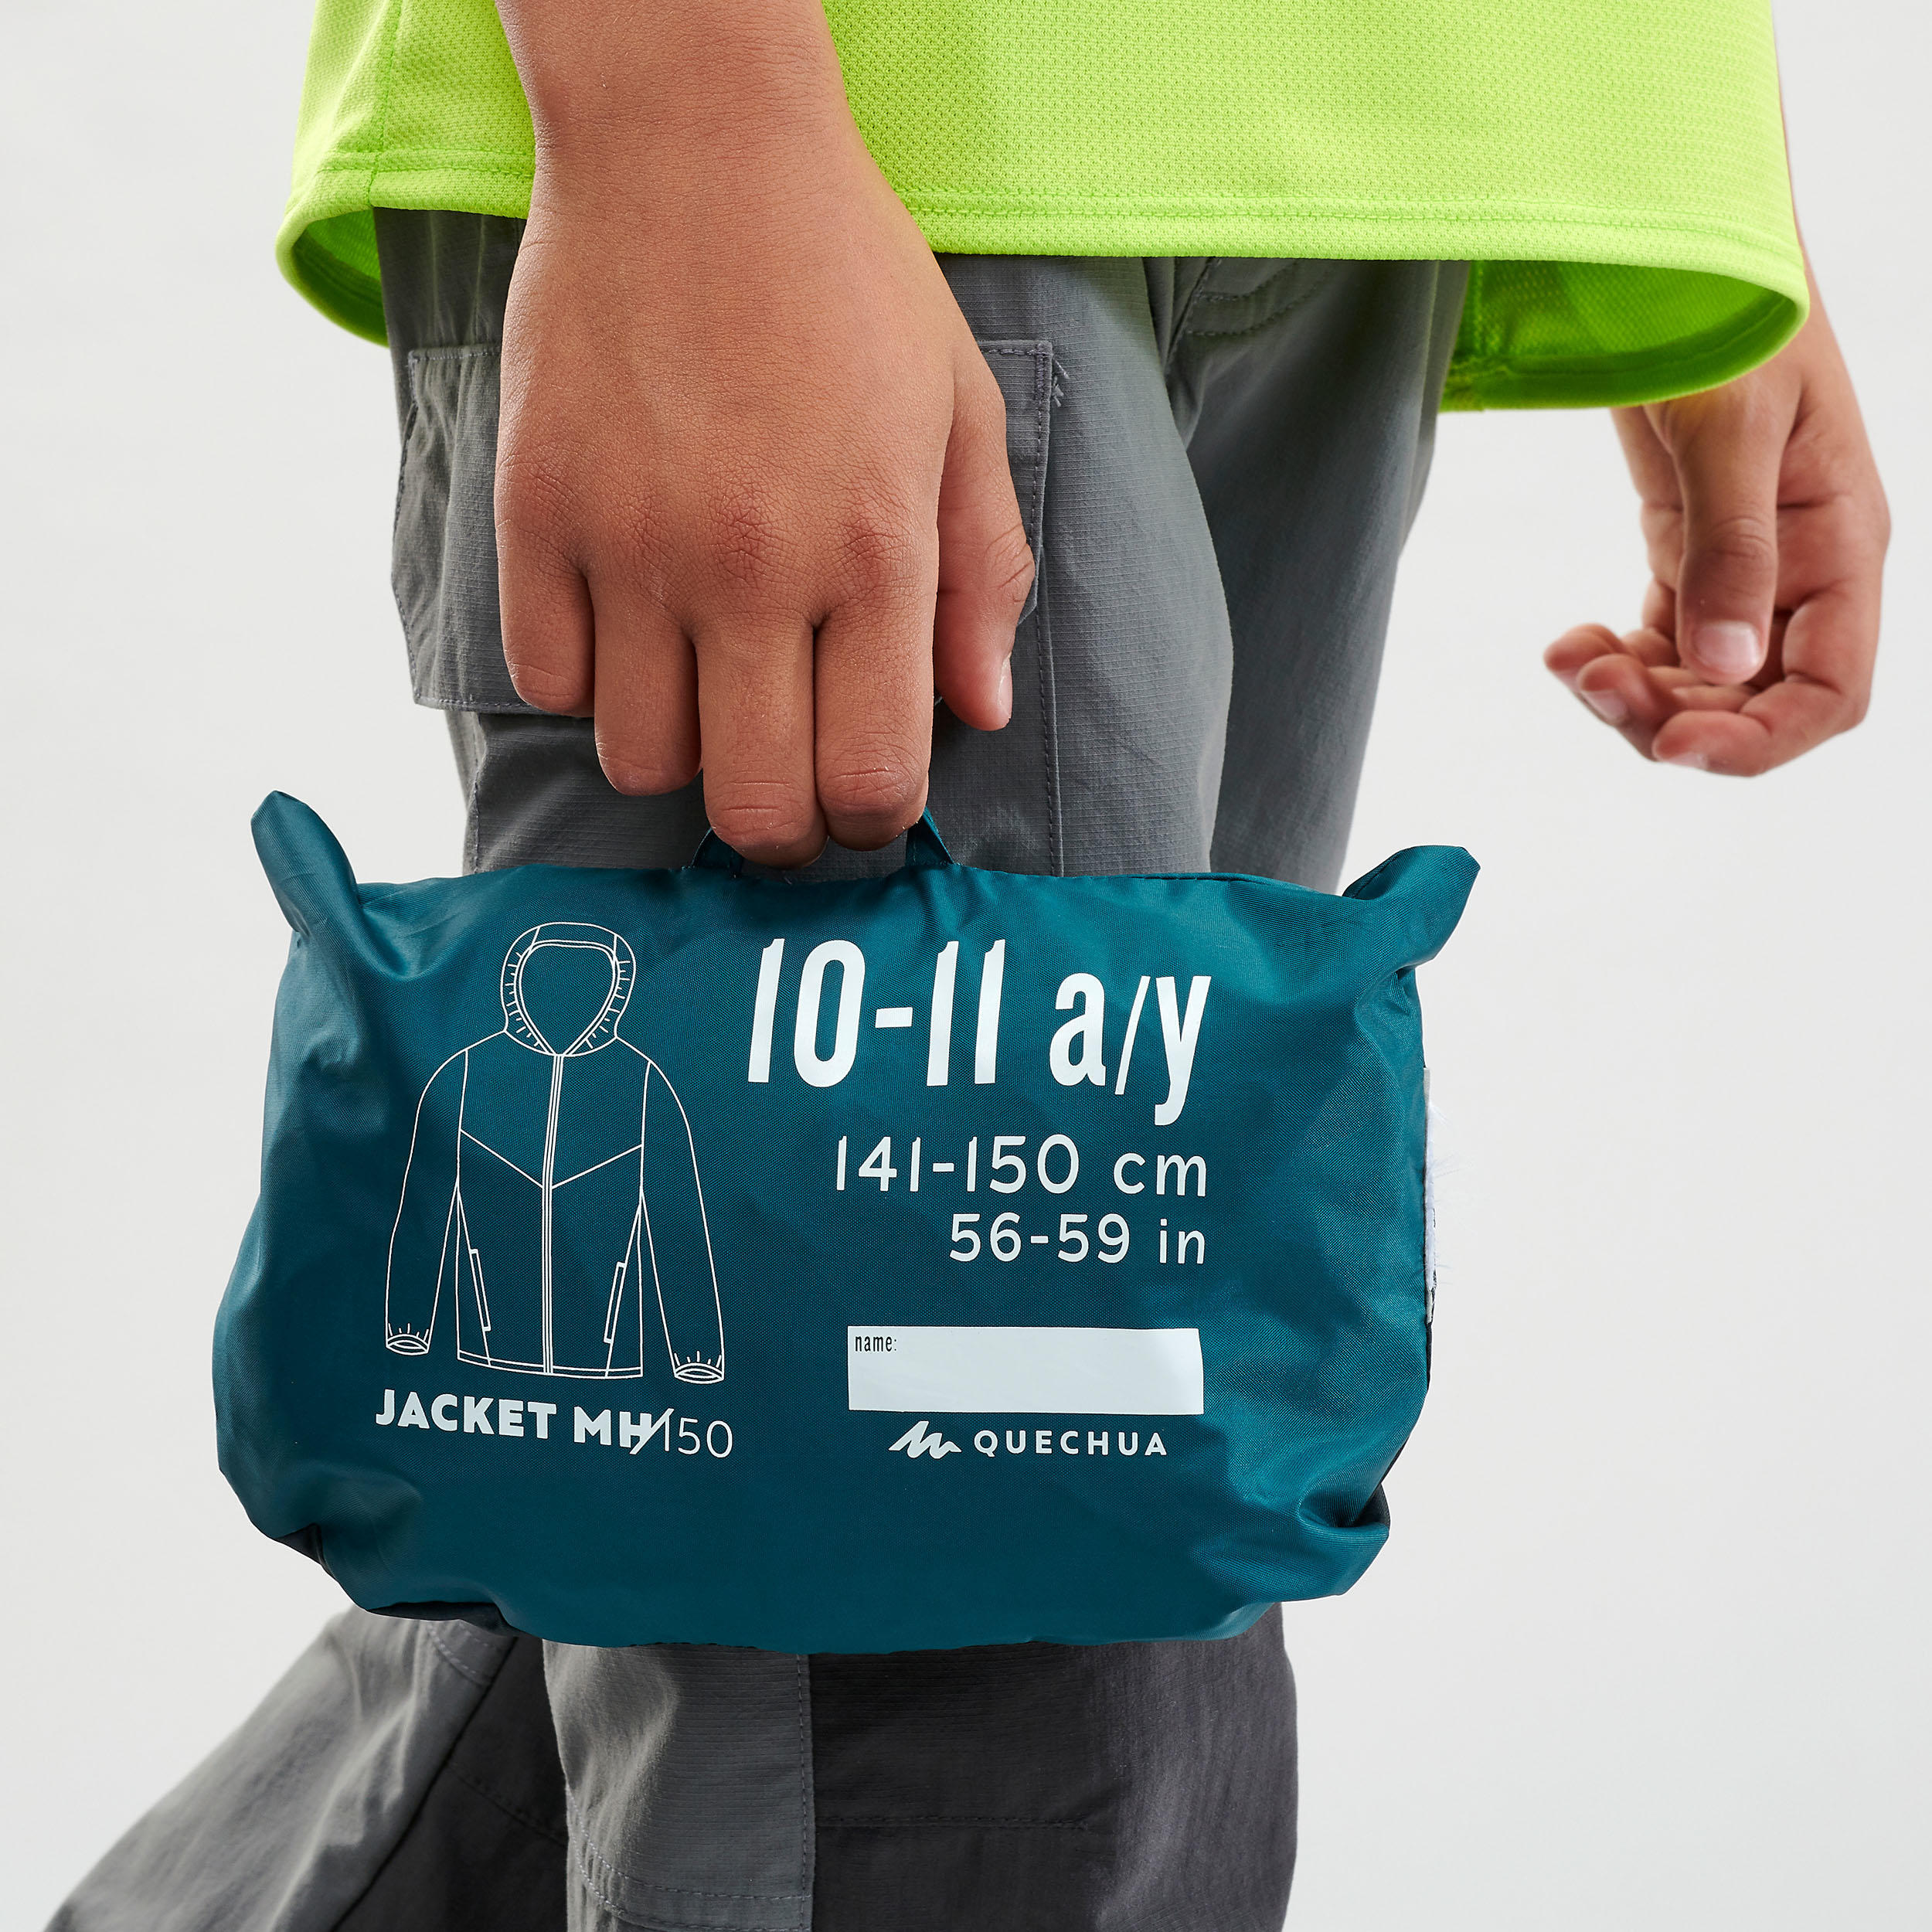 Kids’ Hiking Waterproof Jacket MH150  7-15 Years - green  7/7